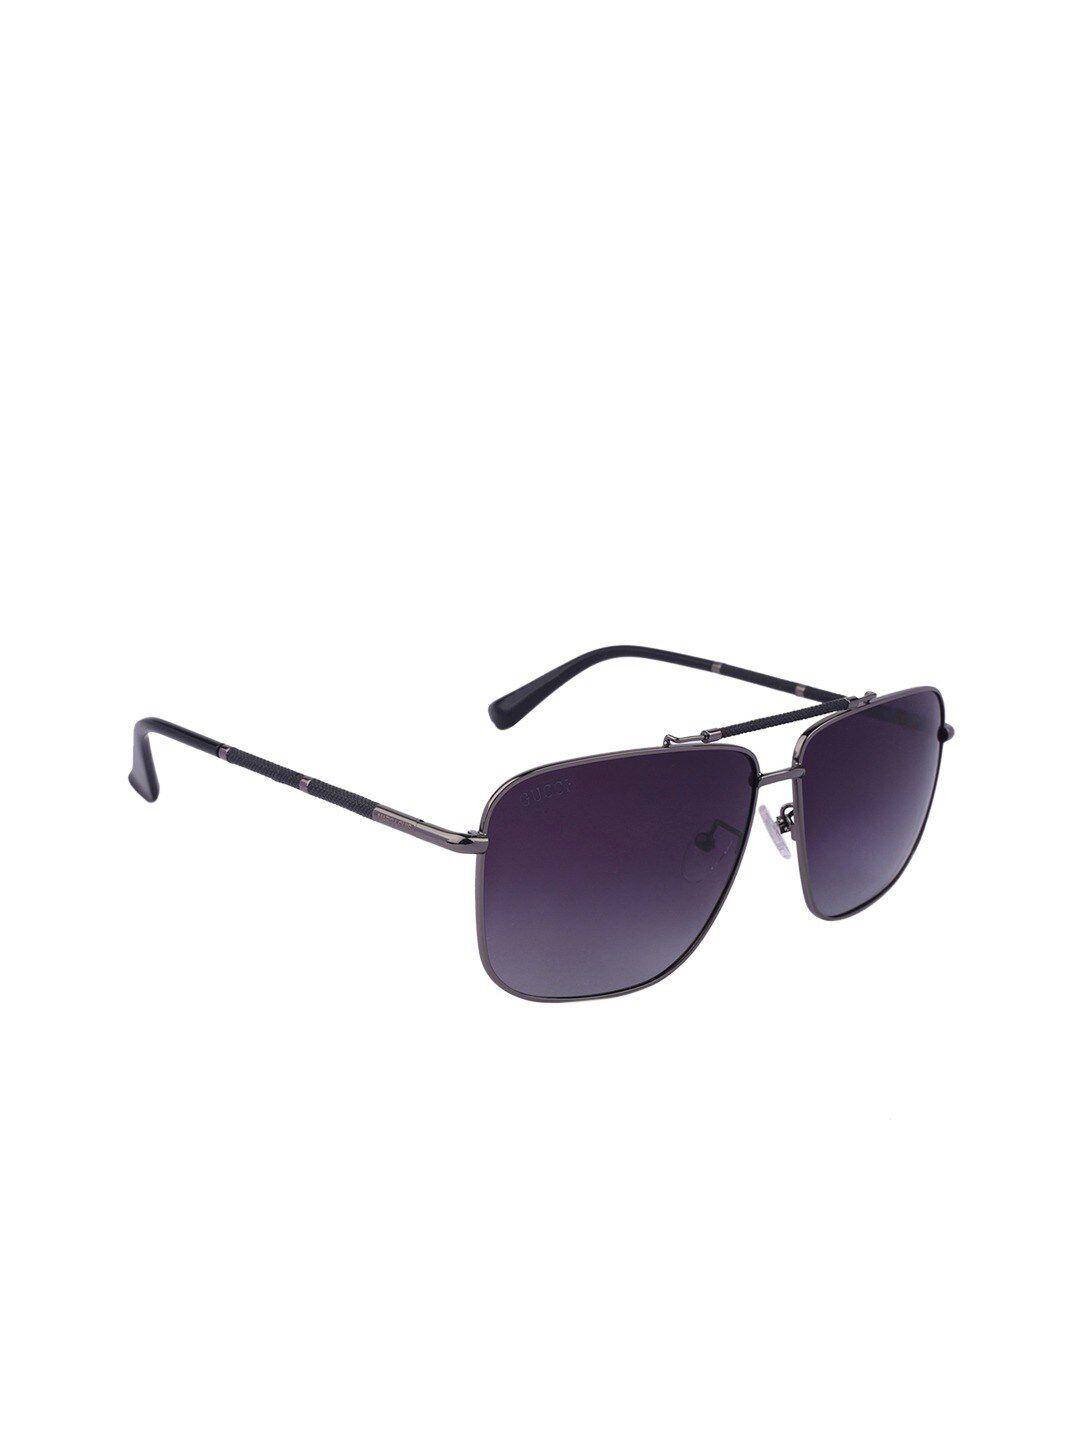 marc louis unisex purple lens & gunmetal-toned square sunglasses polarised & uv protected